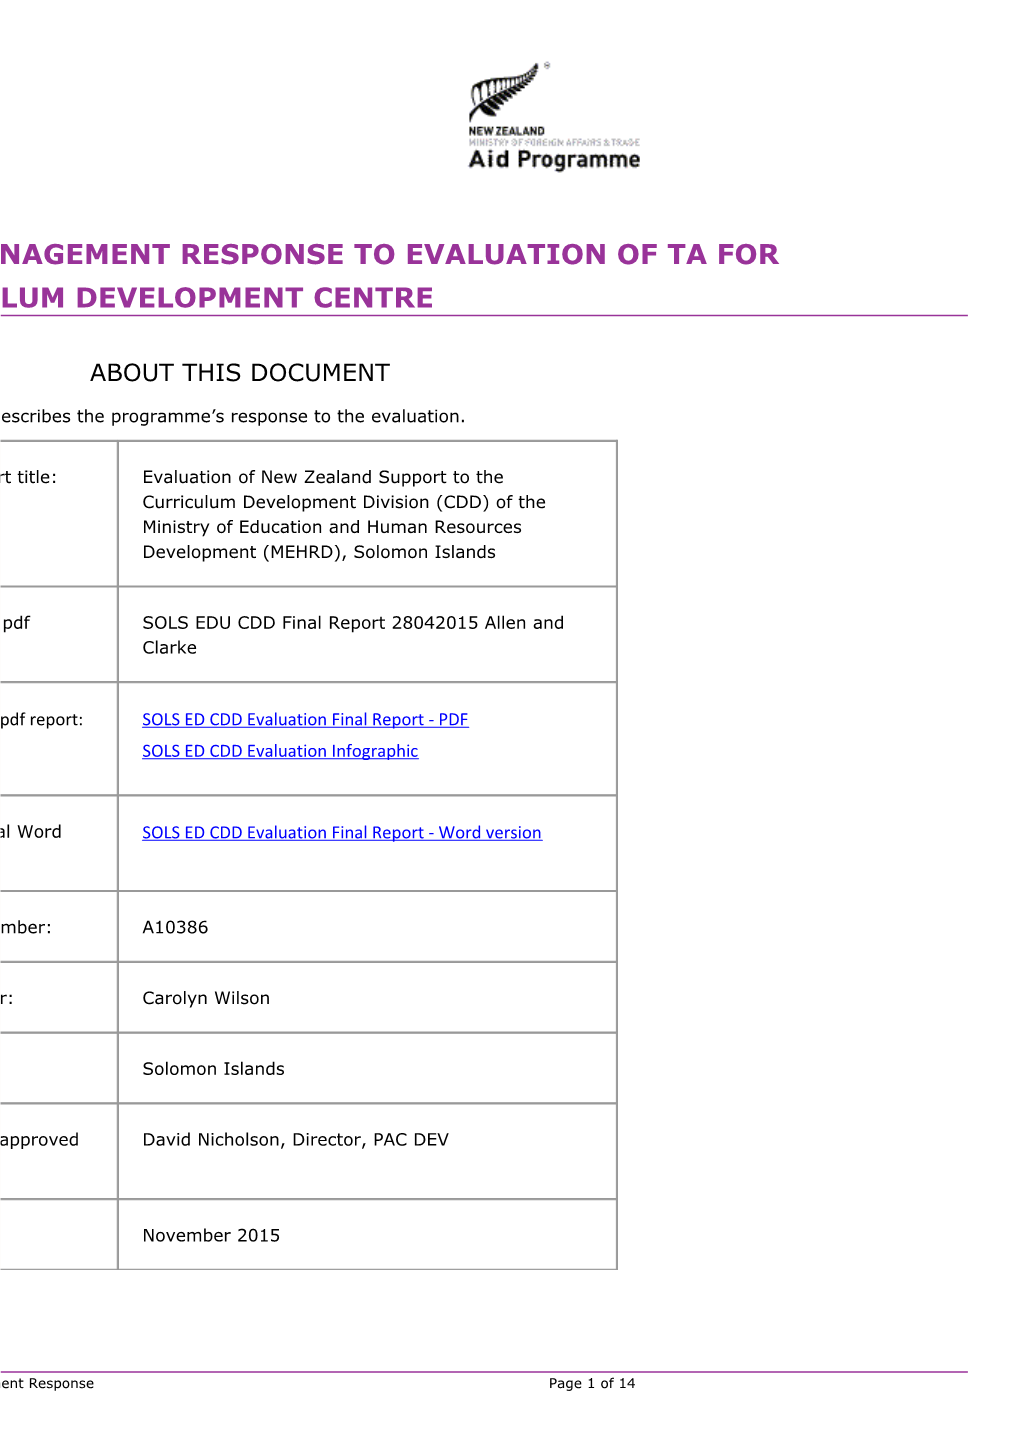 SOLS ED CDD Evaluation Management Response 2015 Sept Final